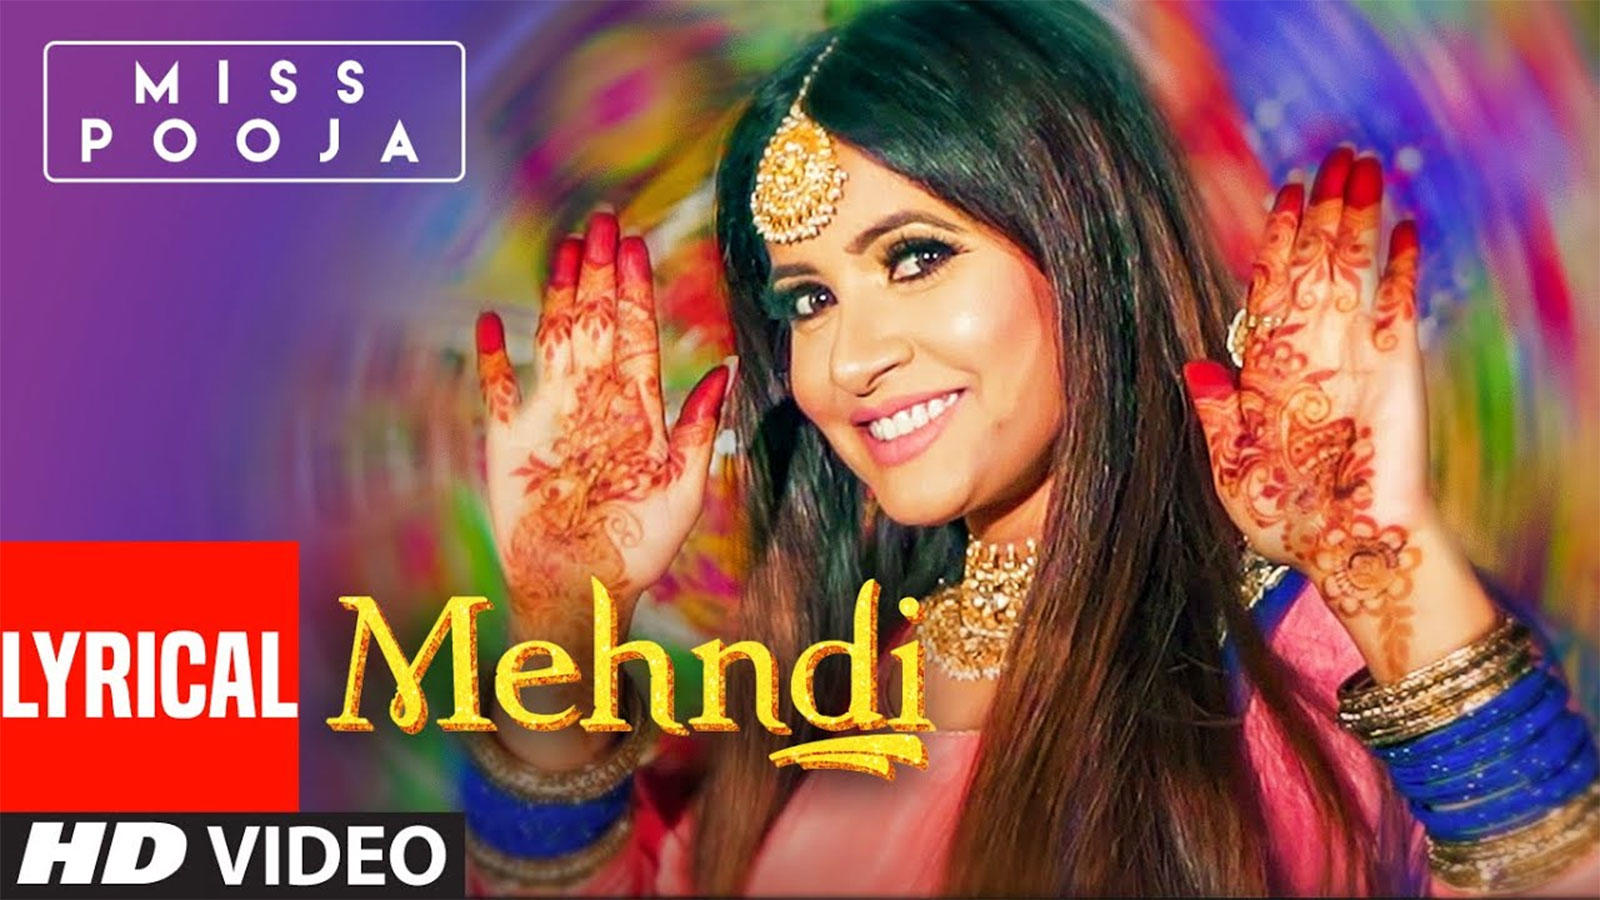 Latest Punjabi Song Lyrical 'Mehndi' Sung By Miss Pooja | Punjabi Video  Songs - Times of India